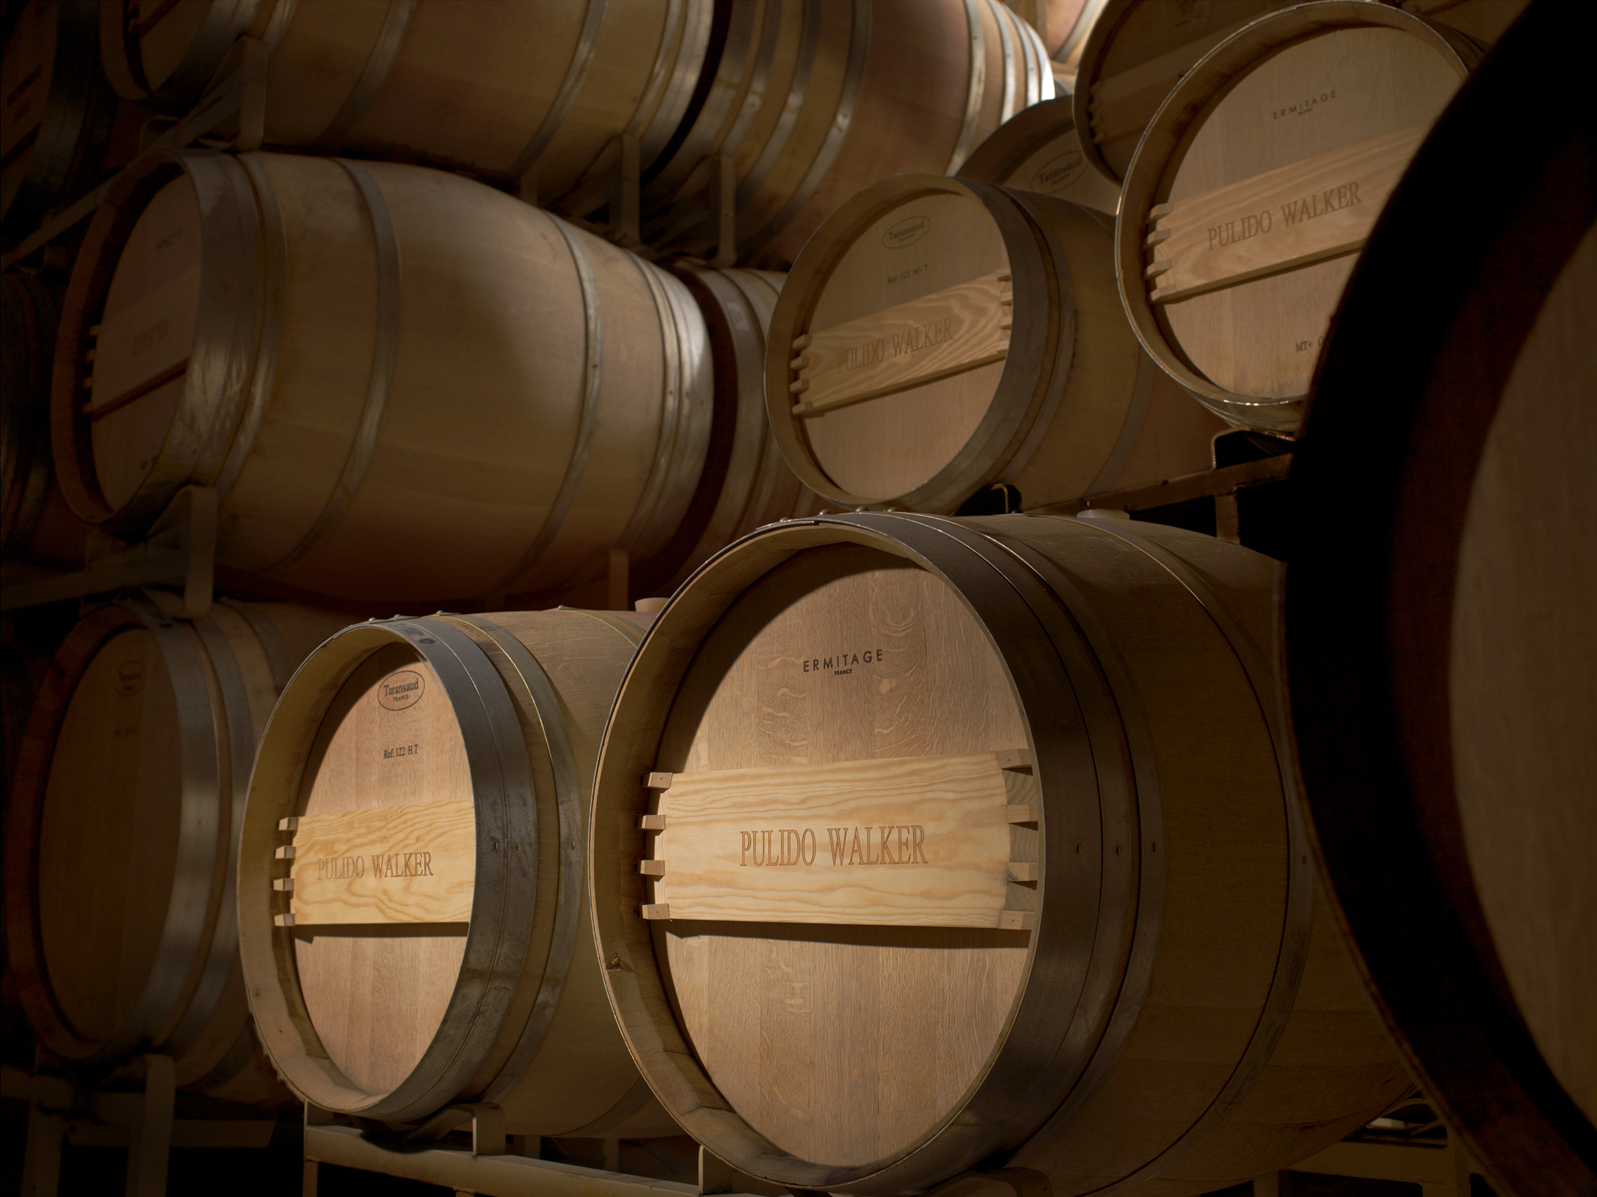 Pulido-Walker's distinctive barrels.